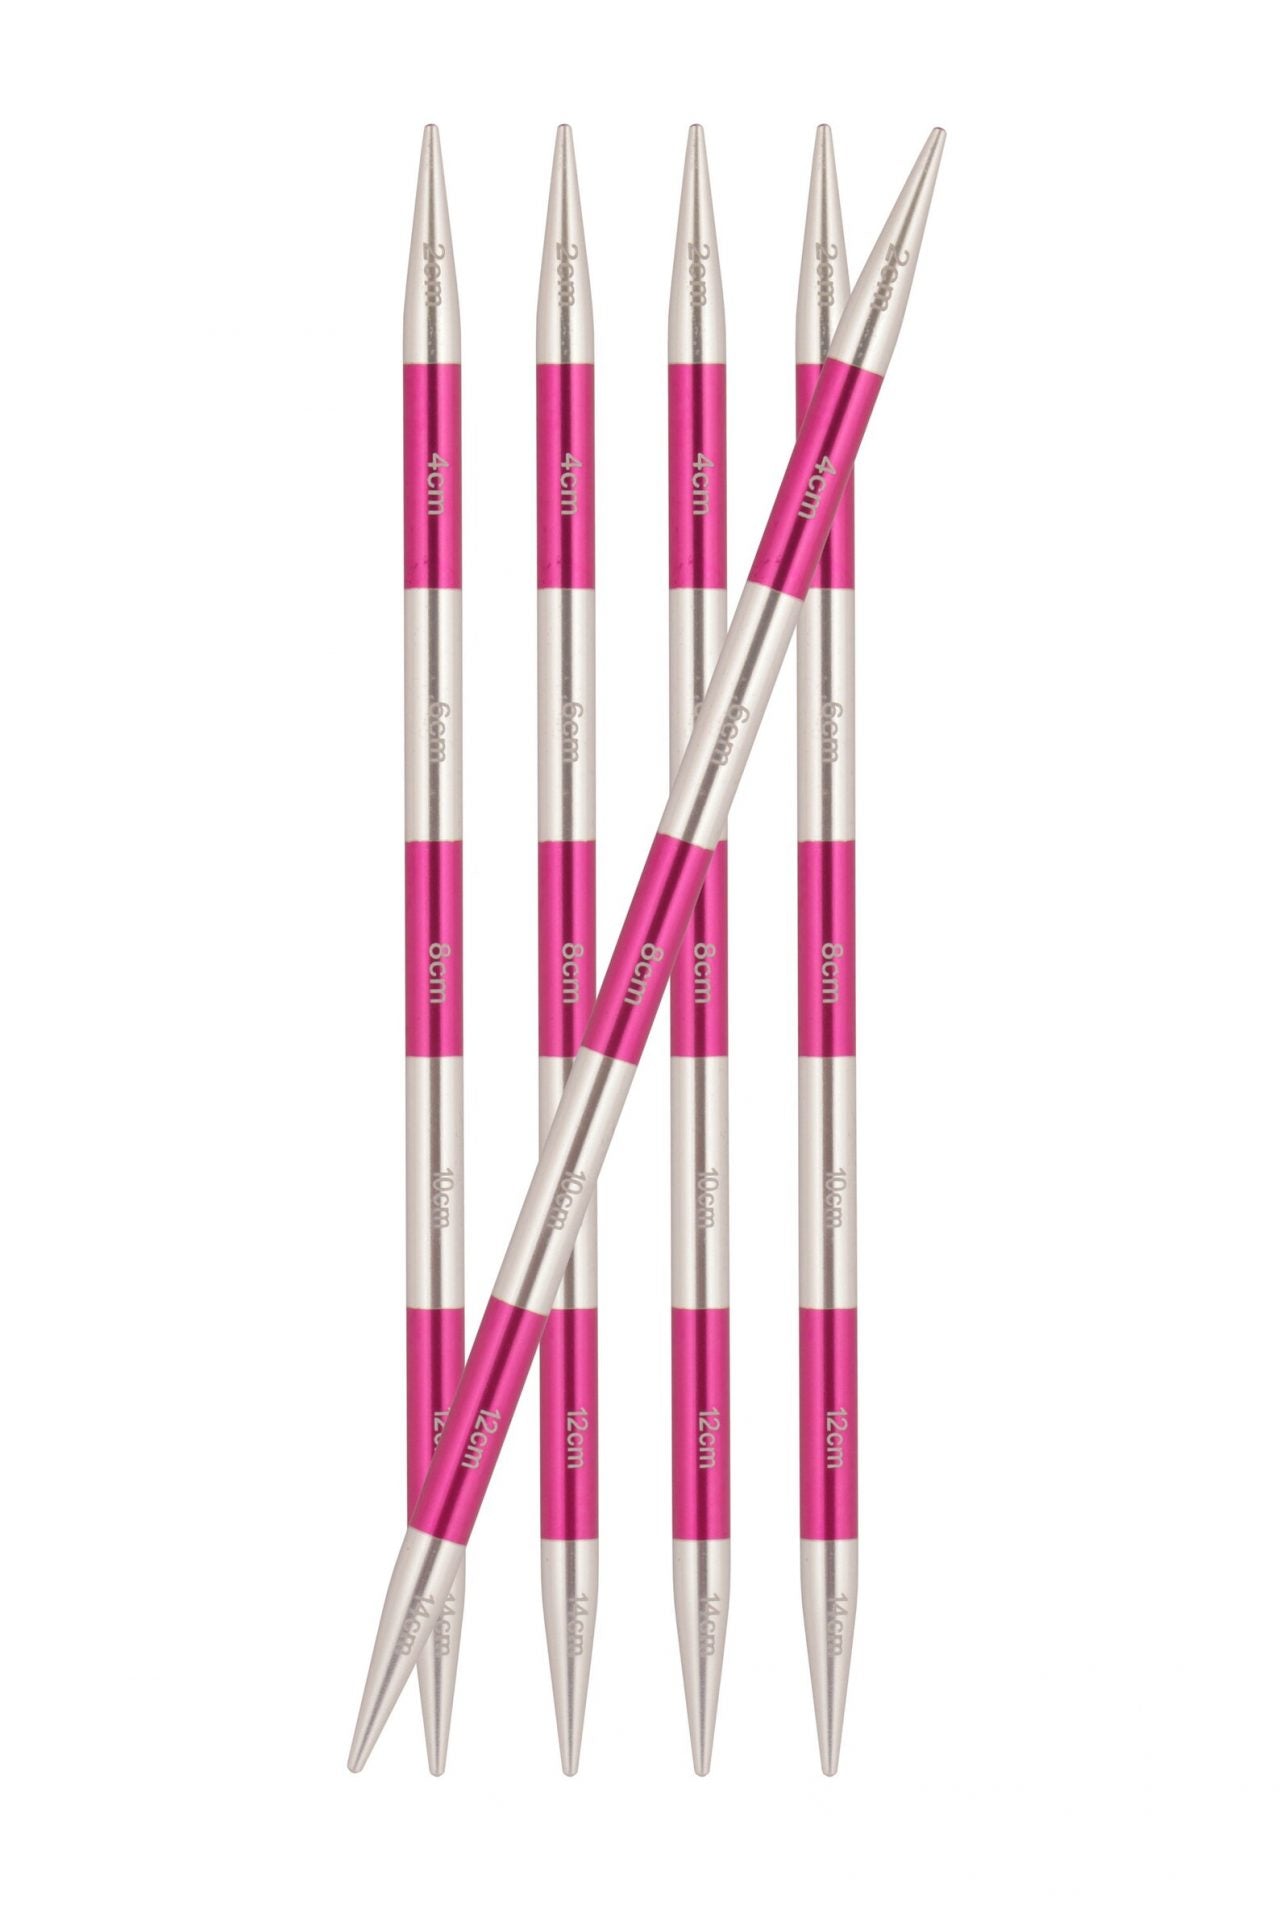 Nadelspiel Smartstix von Knit Pro, 14 cm